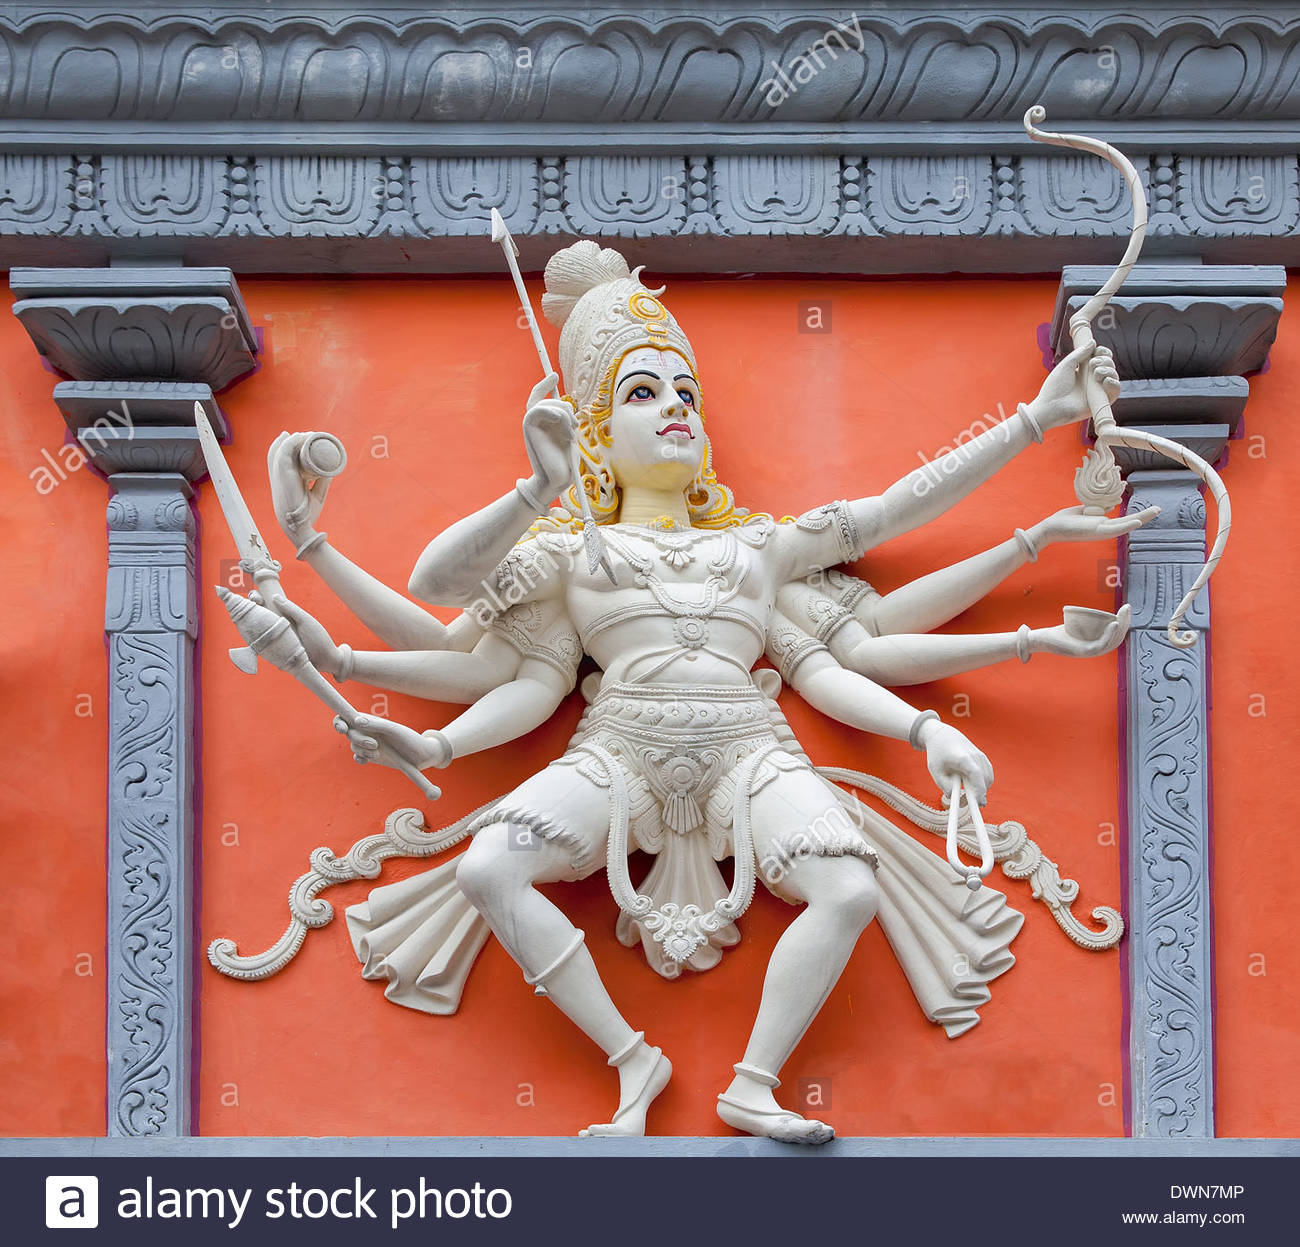 Symbols Hindu Lord Shiva Stock Photos & Symbols Hindu Lord Shiva.